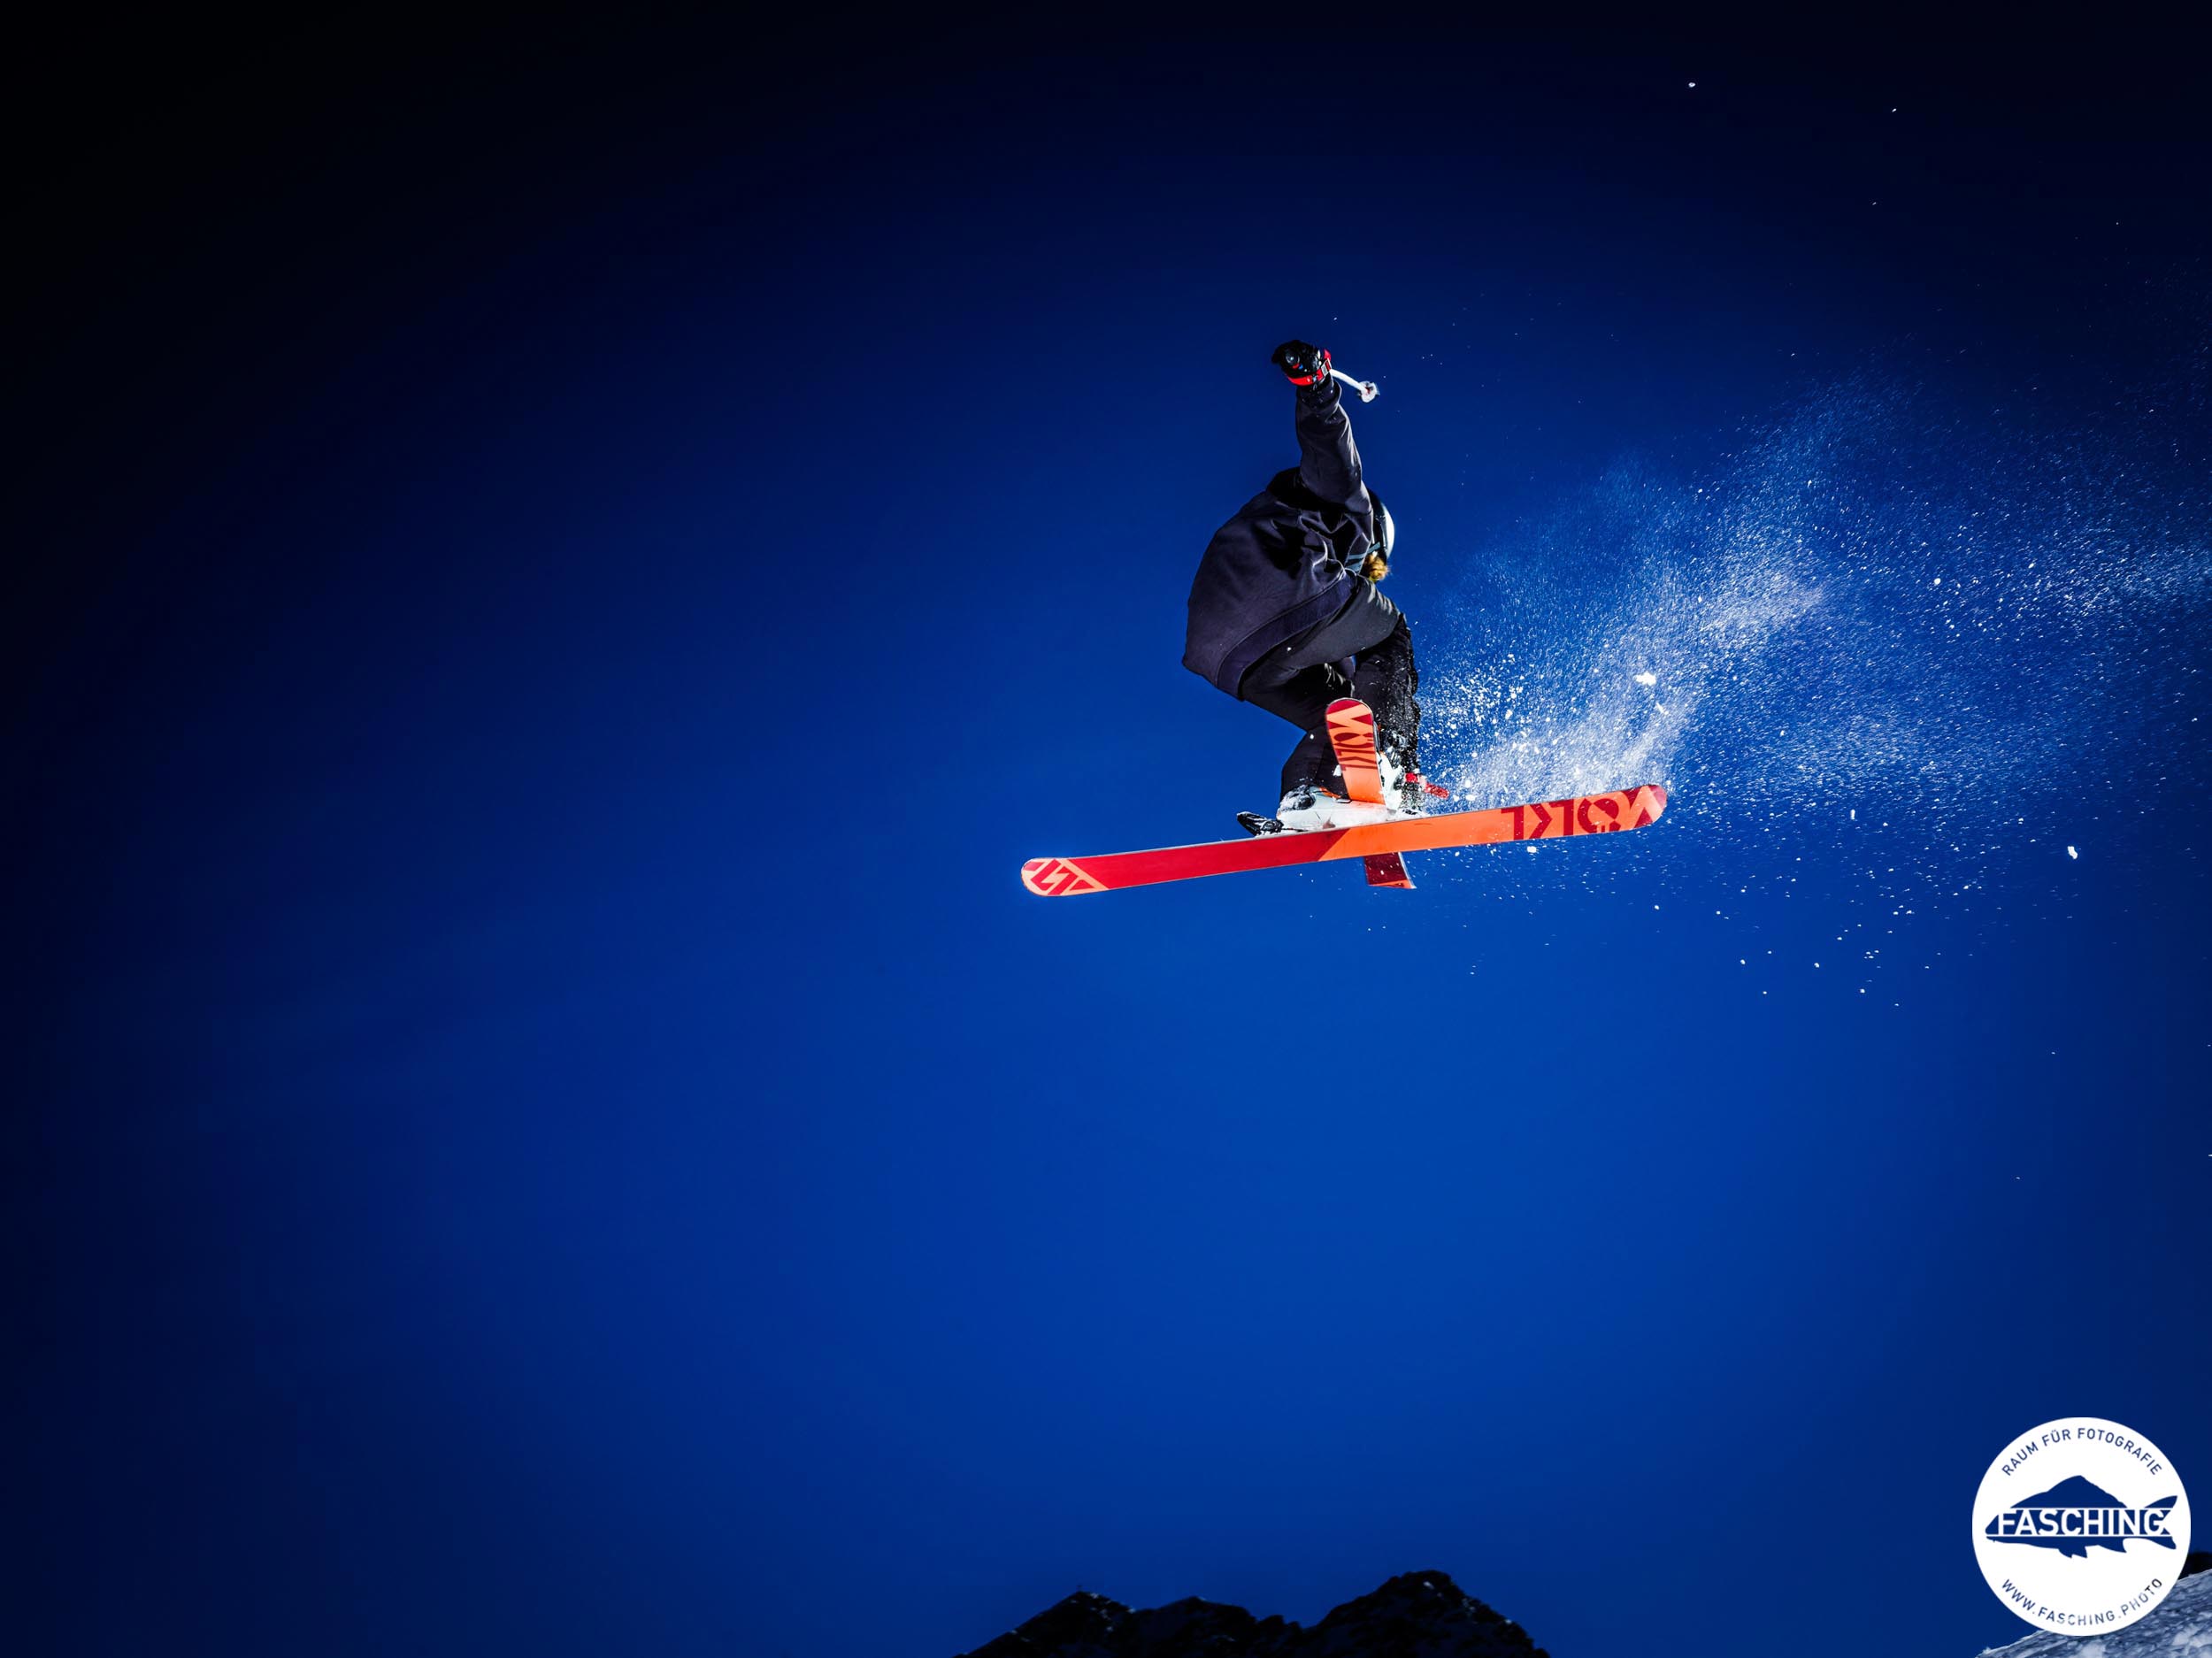 Sportfotograf Luca Fasching schoss diese Aufnahmen der Freestyleskifahrer